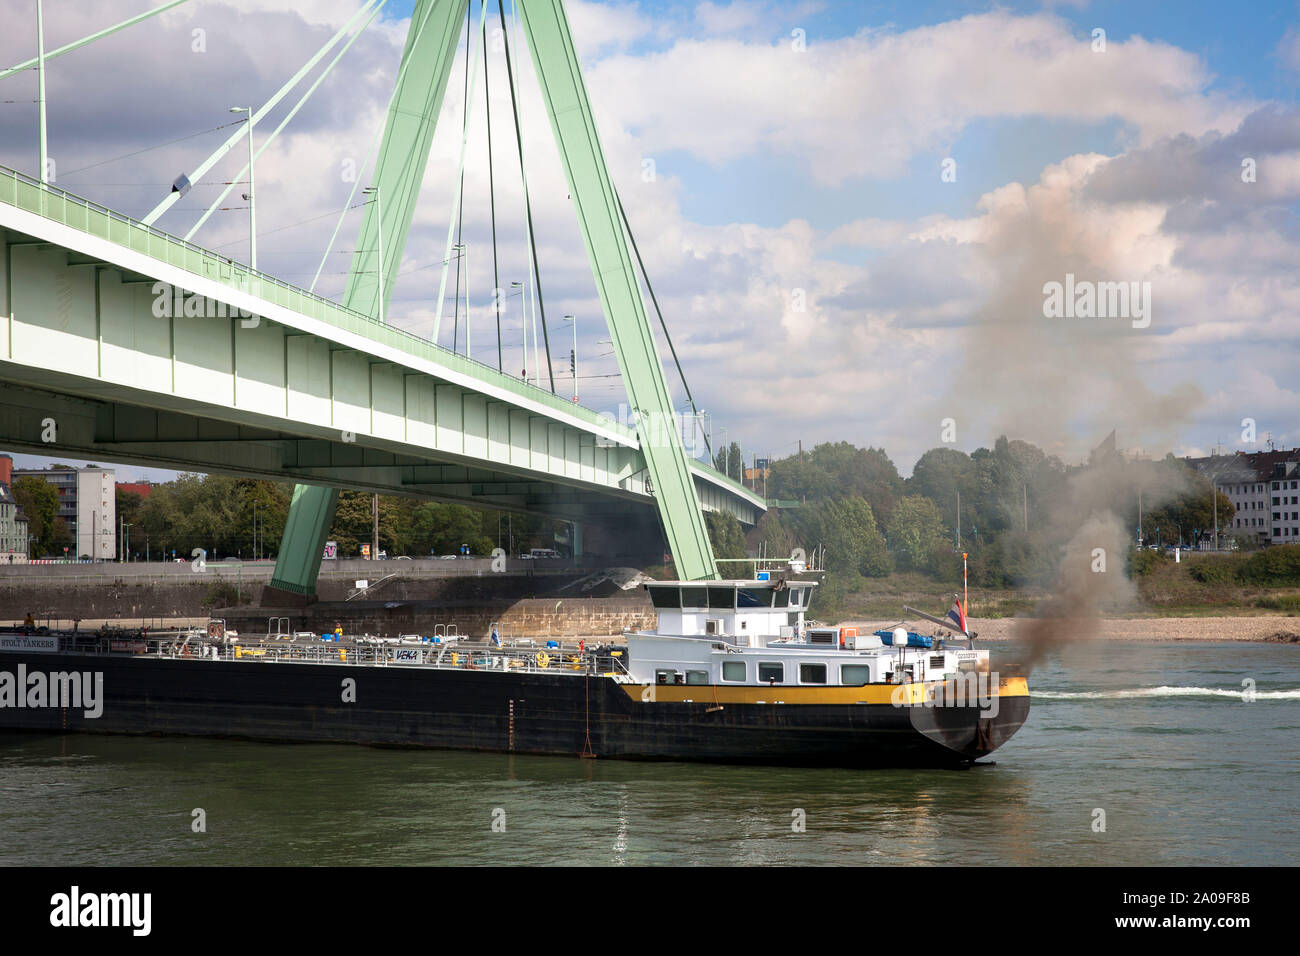 A causa di un incendio nel vano motore, il motore nave Stolt Firenze aveva a testa per il porto di Deutz, Settembre 12, 2019, Severins bridge, Colonia, Ger Foto Stock